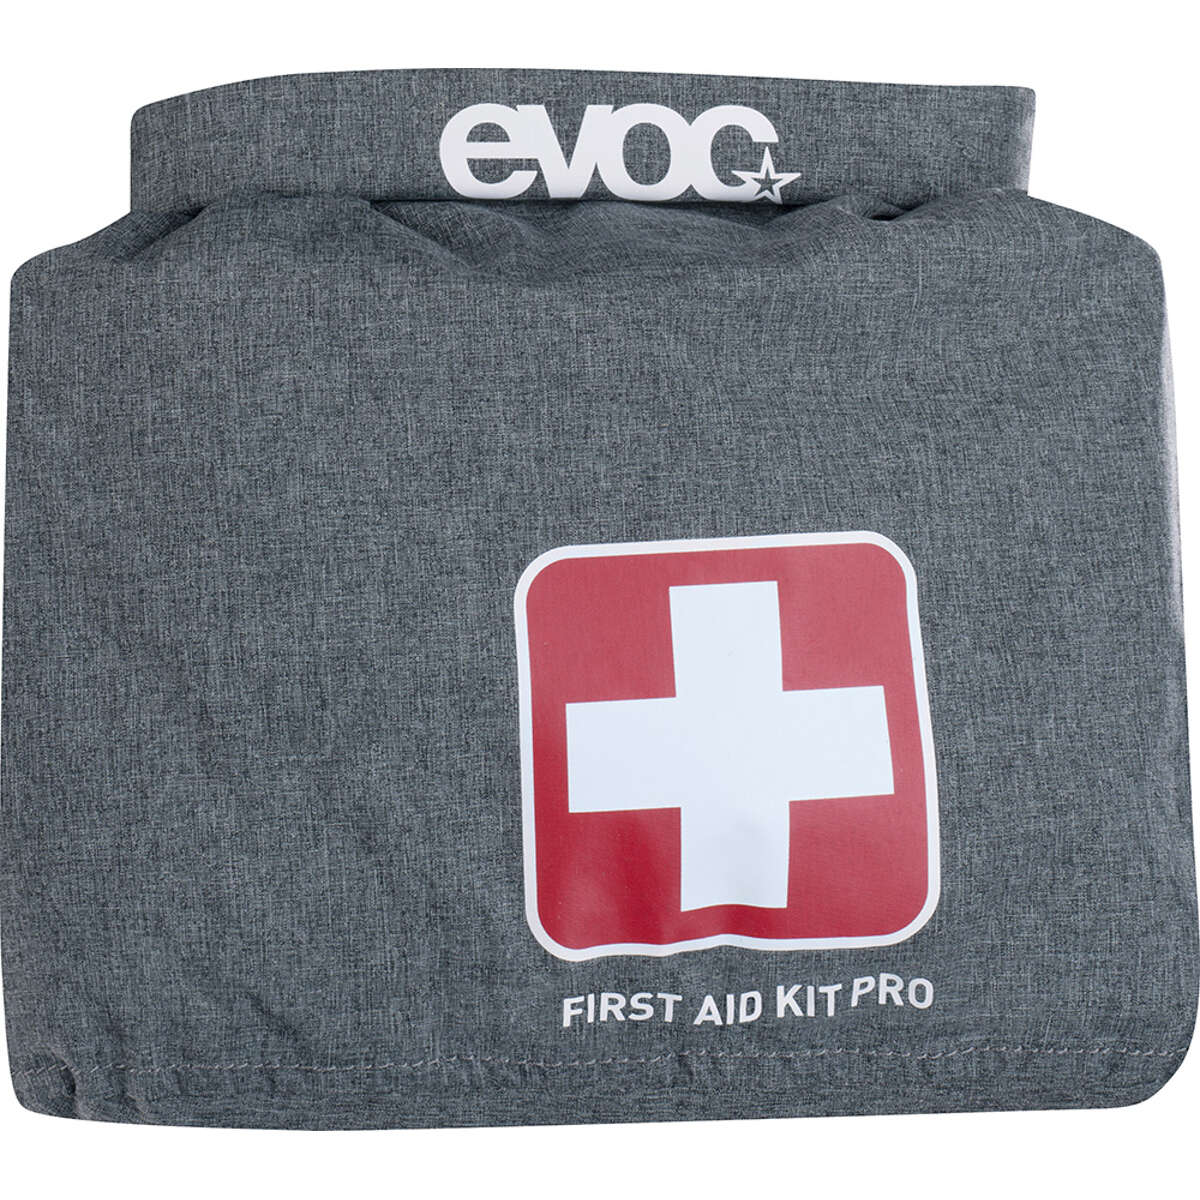 Evoc Erste-Hilfe-Set Pro First Aid Kit Schwarz/Heather